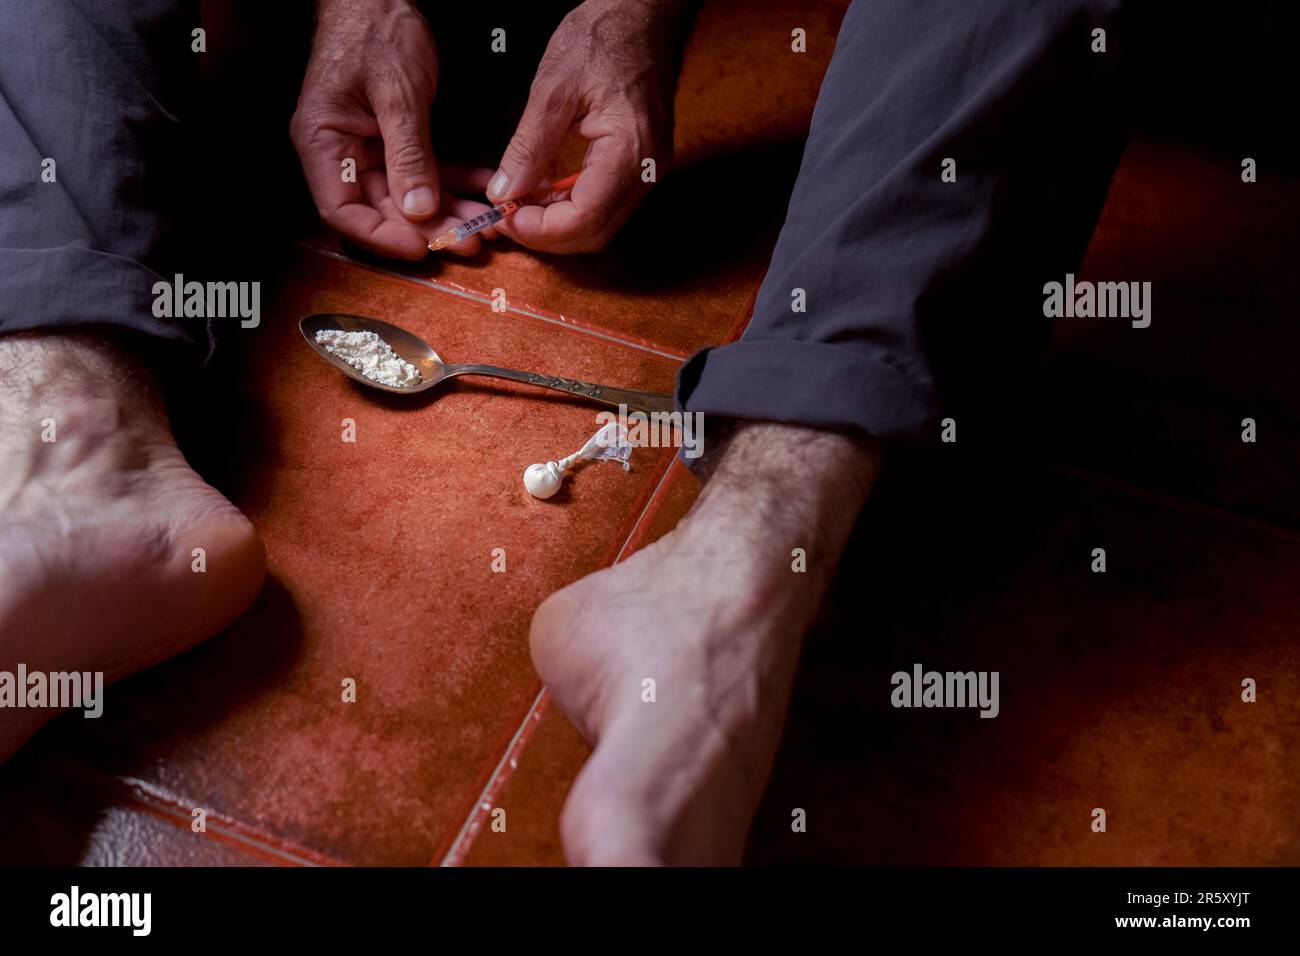 Vue de face d'un homme assis pieds nus sur le sol avec une seringue d'héroïne dans sa main concept de toxicomanie Banque D'Images